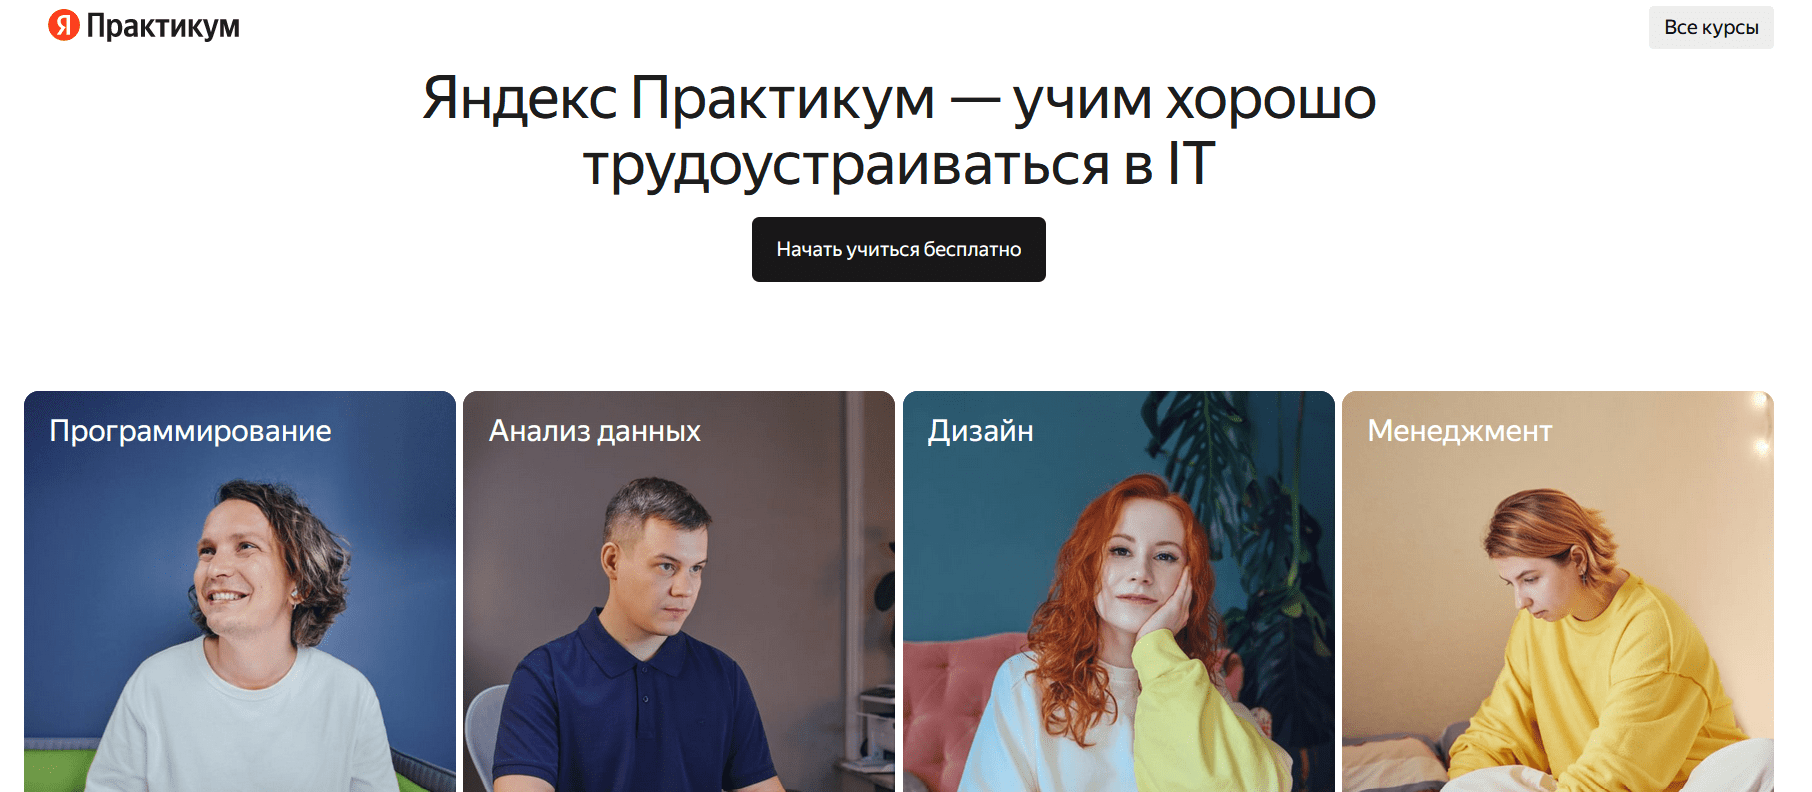 Главная страница Яндекс Практимум